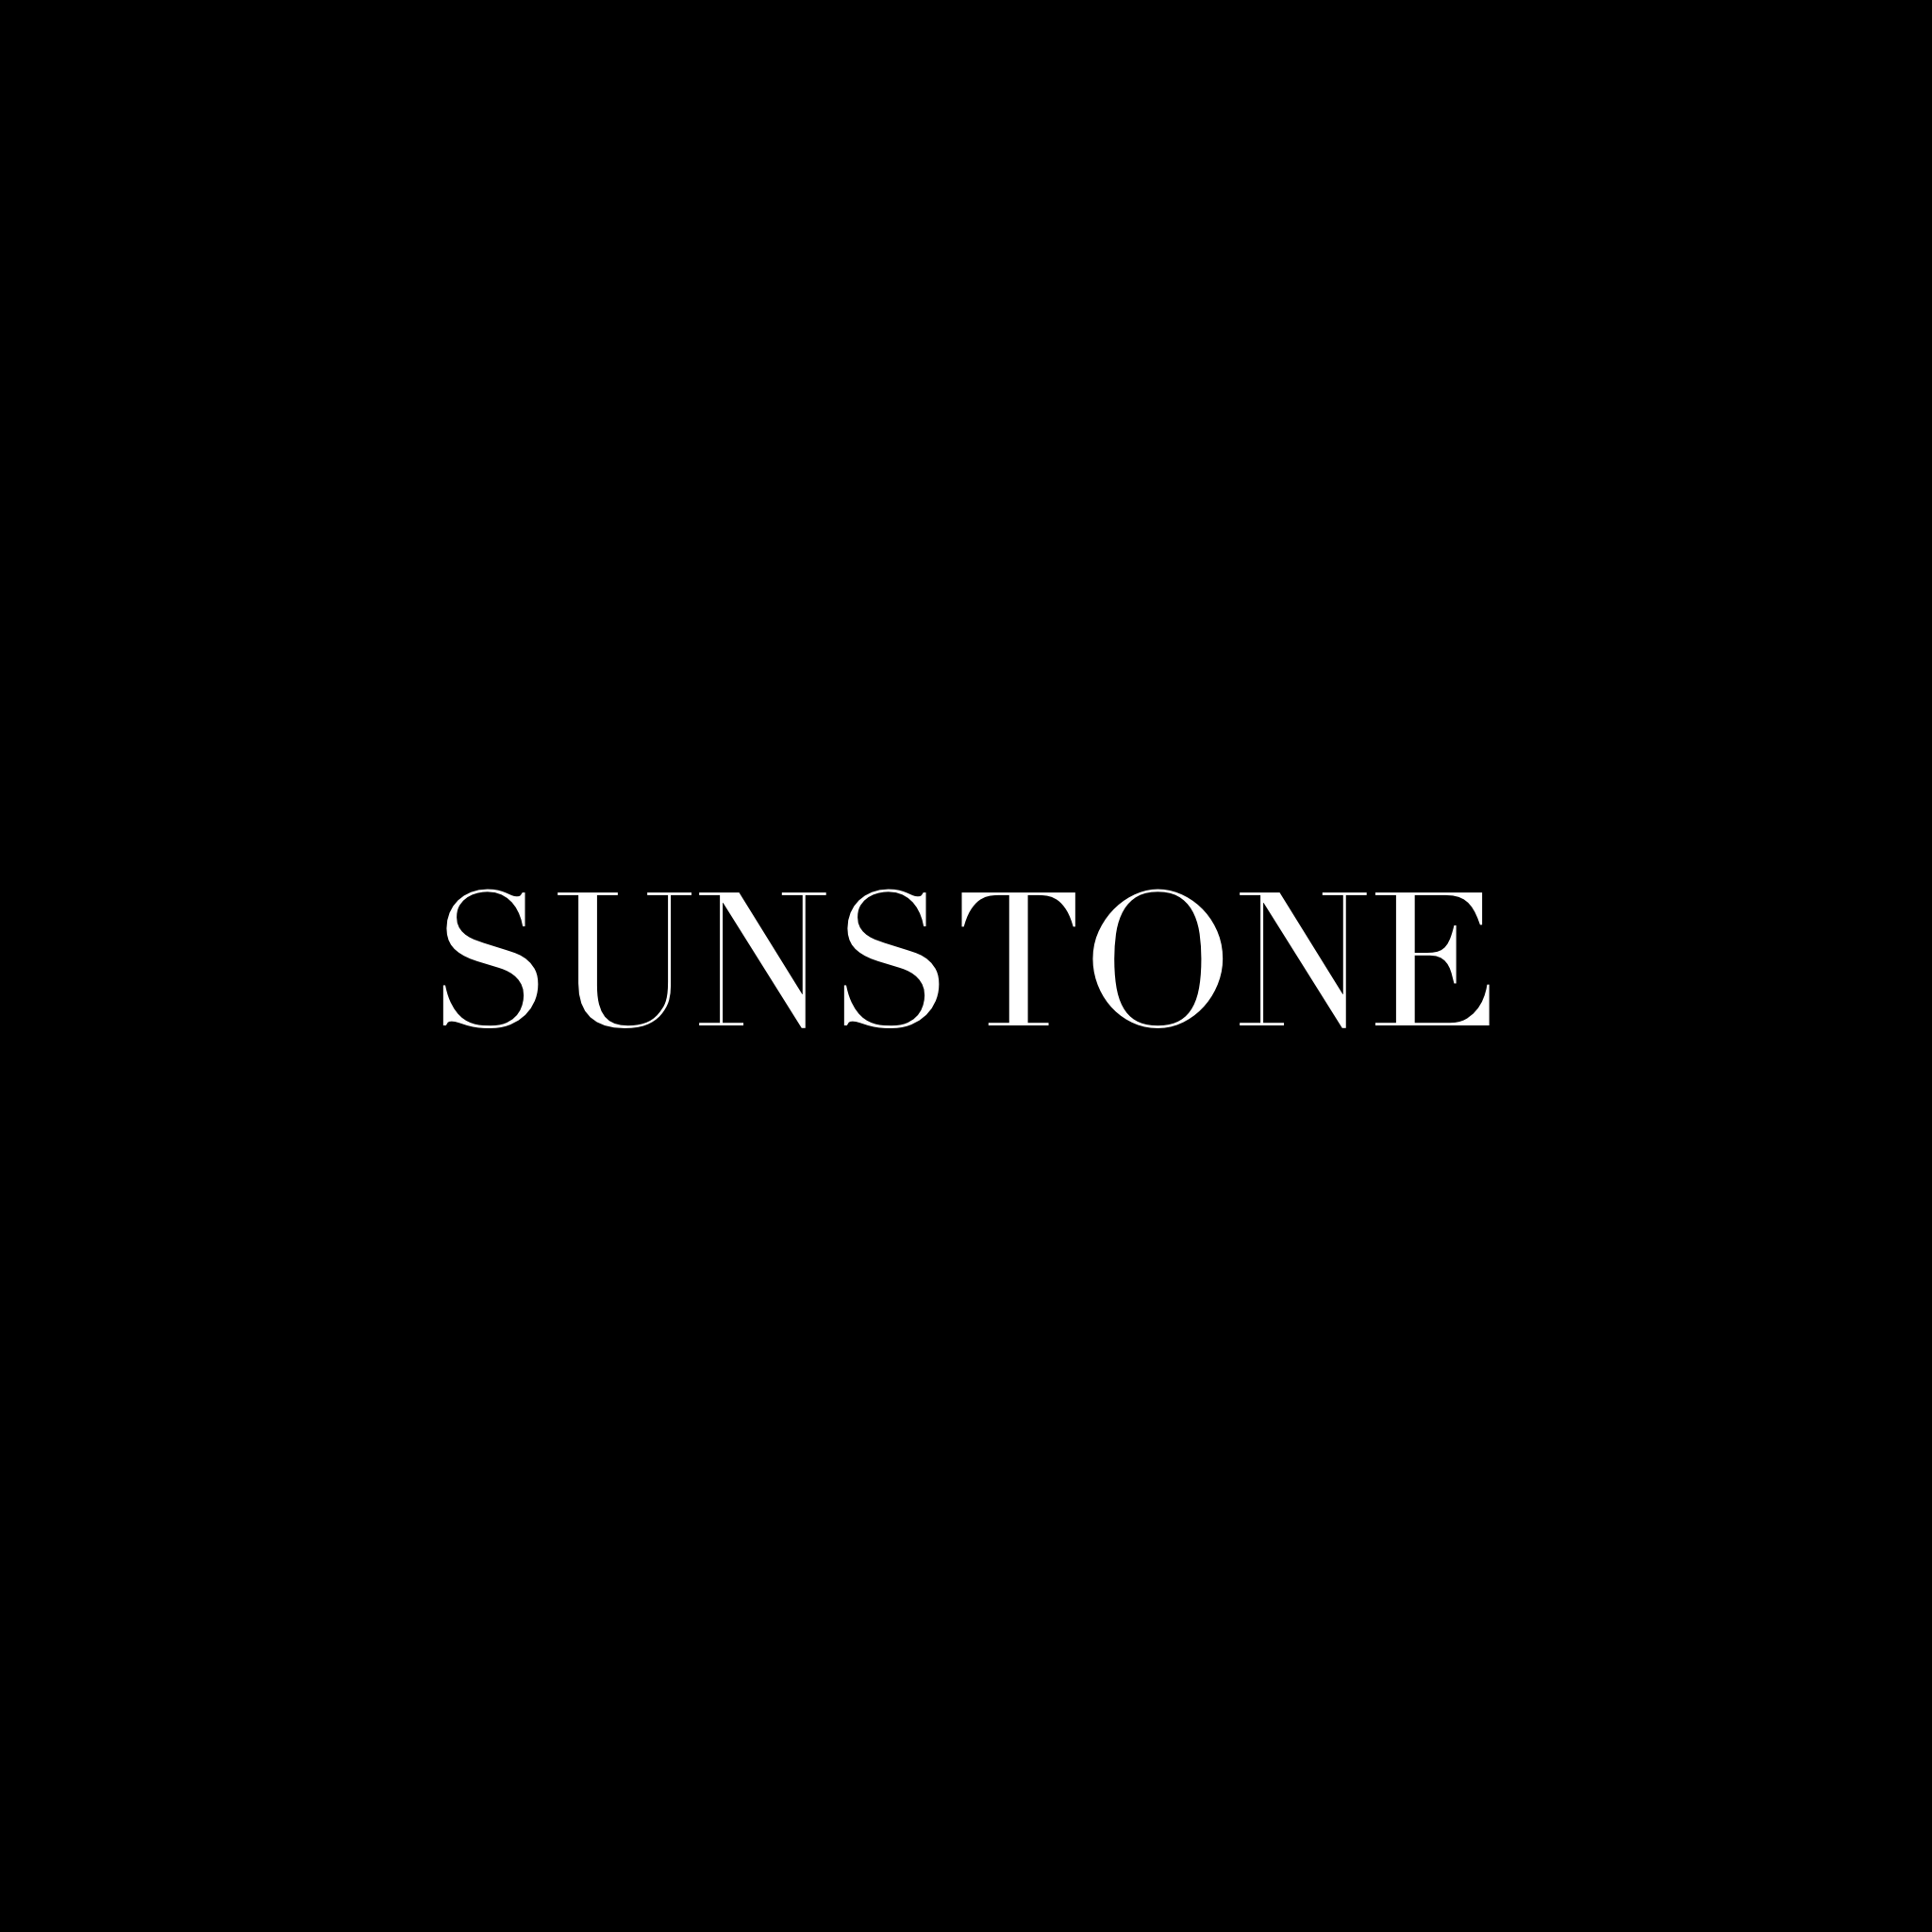 Sunstone (Pre Order)